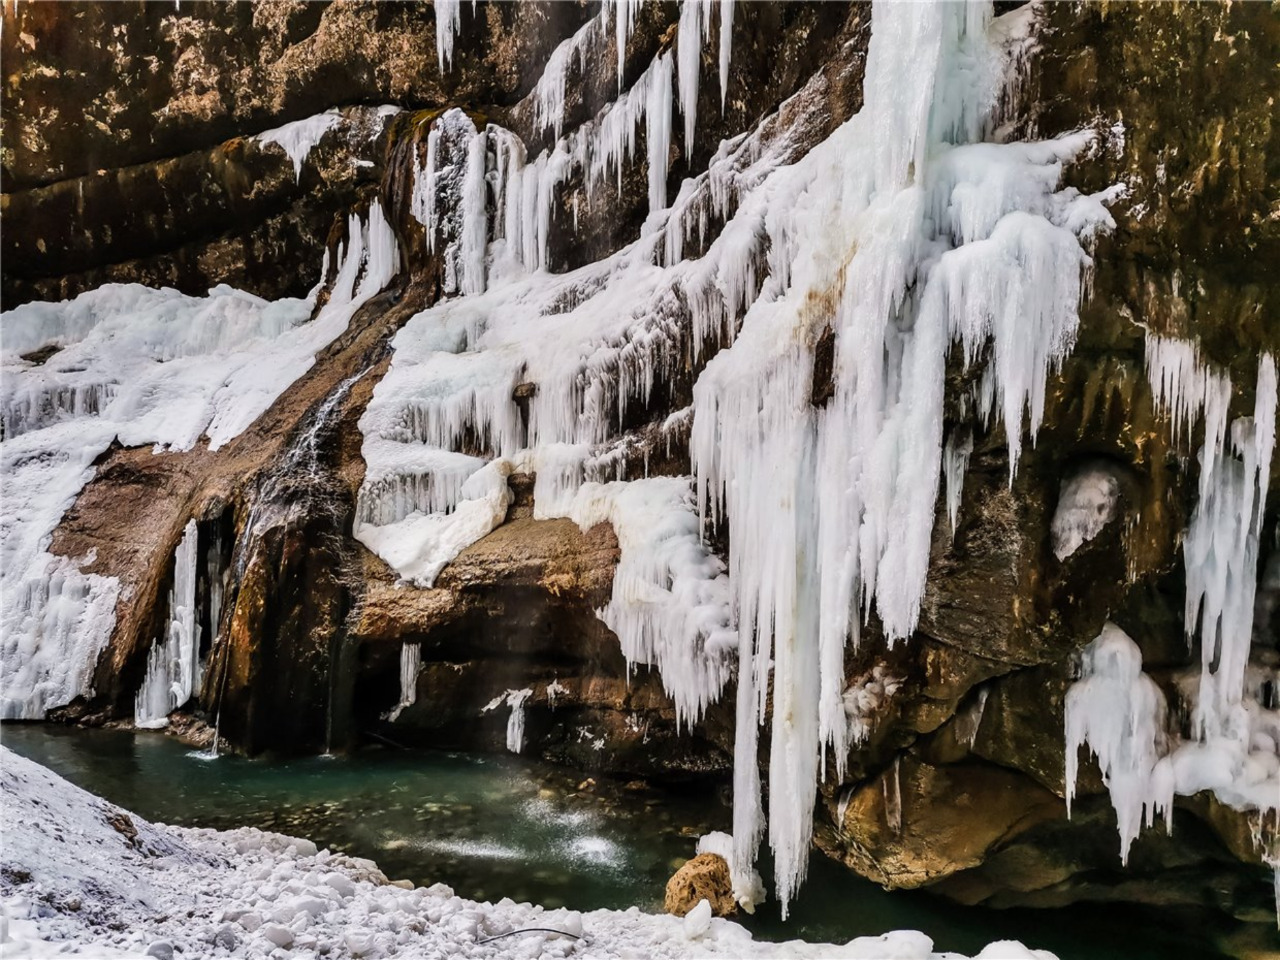 Чегемские водопады, Гижгит, Актопрак (Кисловодск) | Цена 3800₽, отзывы, описание экскурсии